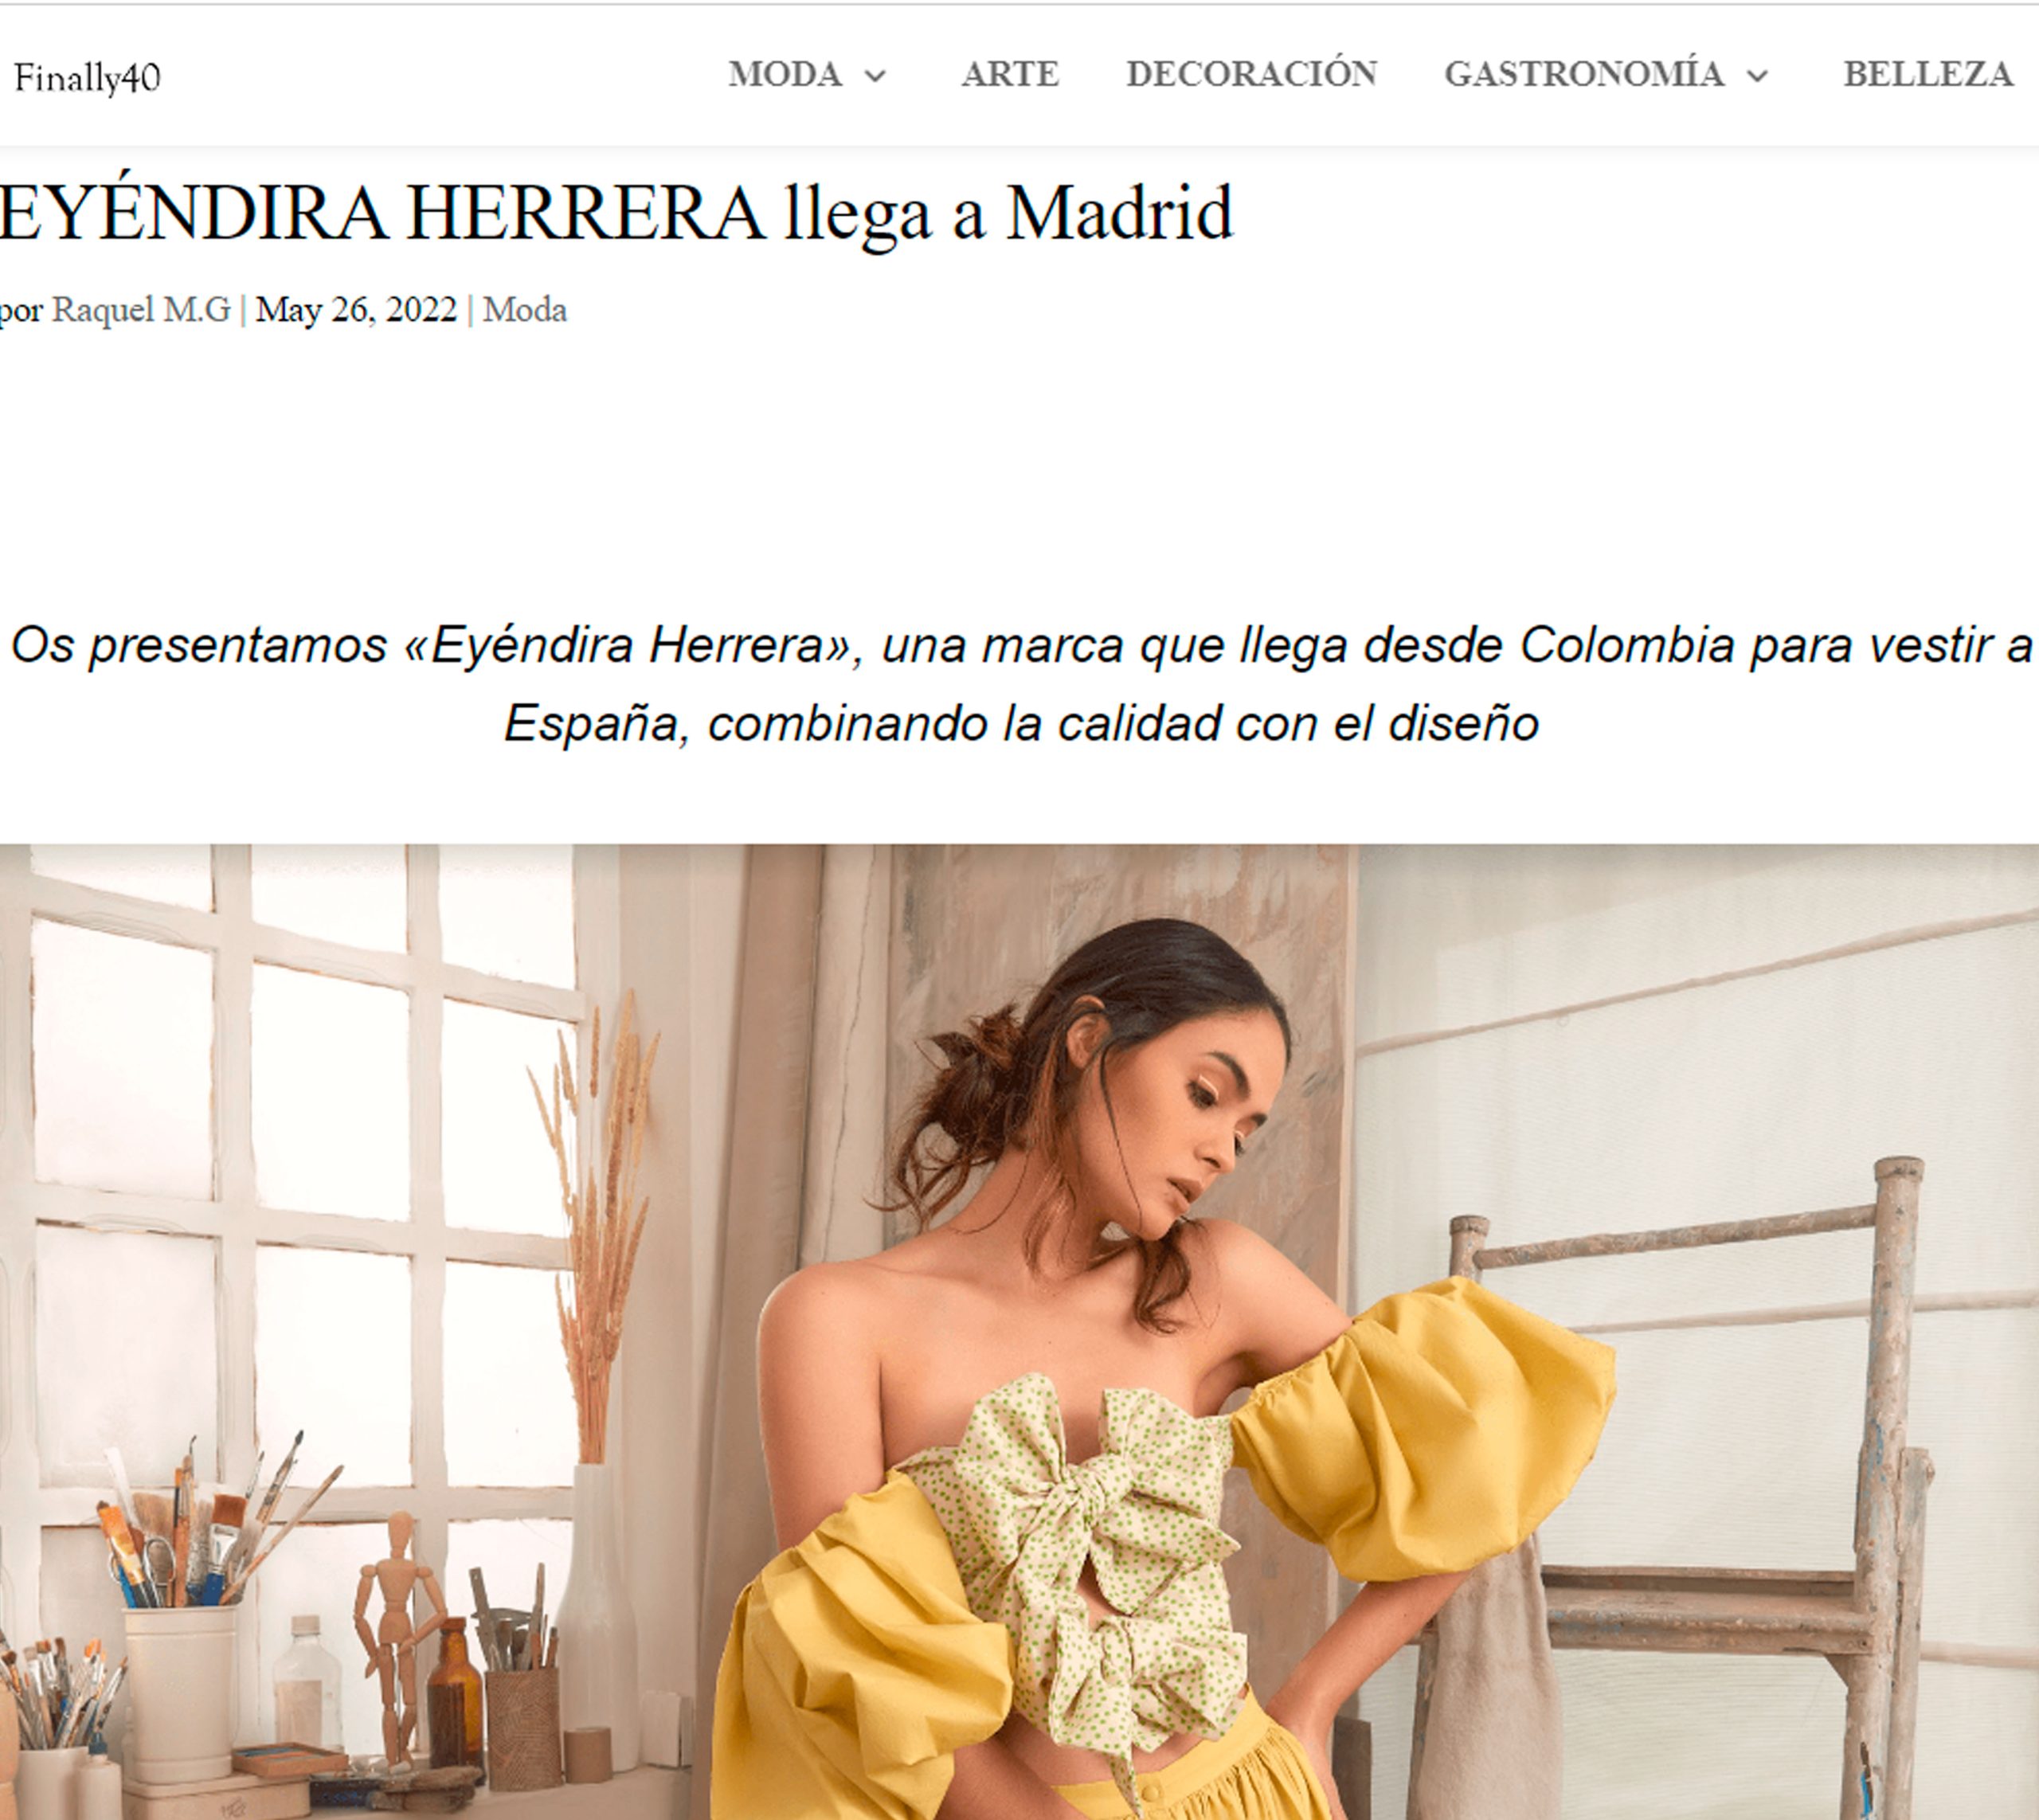 Finally 40: "EYÉNDIRA HERRERA llega a Madrid"